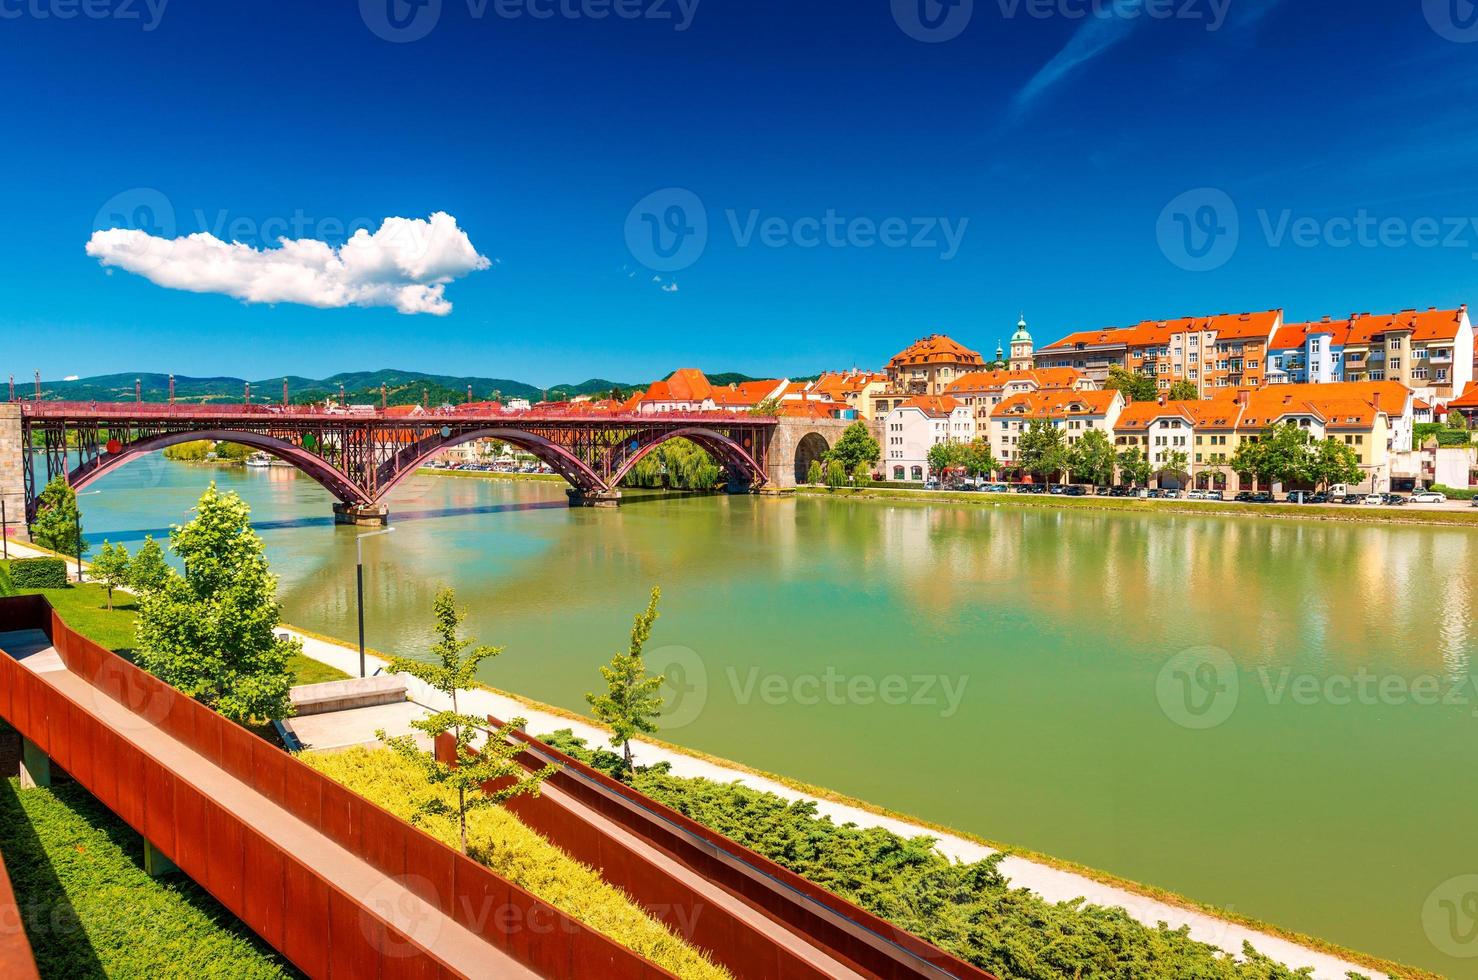 il bellissimo paesaggio urbano di maribor con il vecchio ponte sul fiume drava, l'argine e i vecchi edifici con tetti di tegole arancioni foto